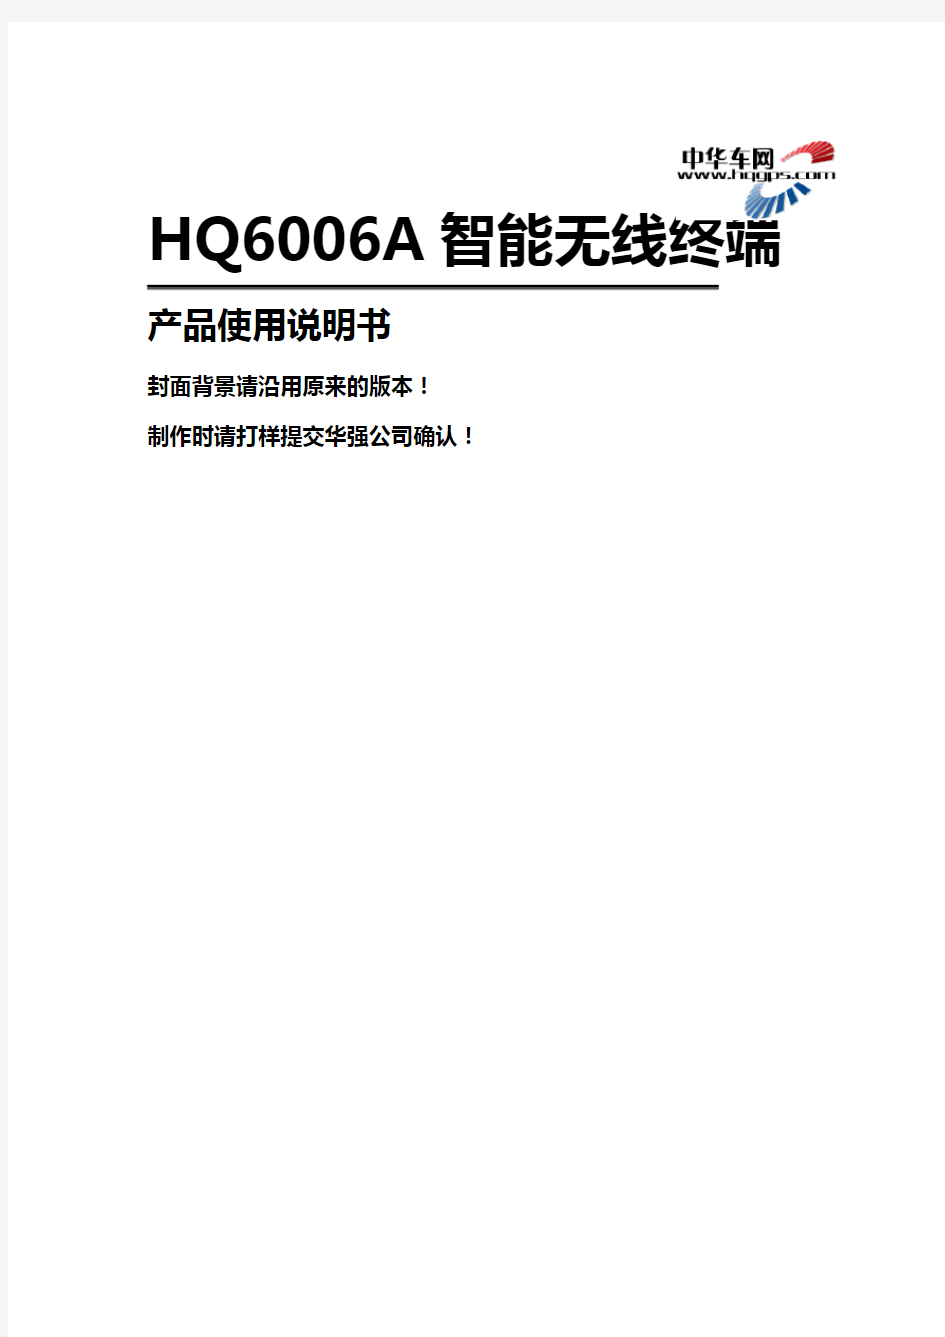 (产品管理)HQA-V智能无线终端产品说明书